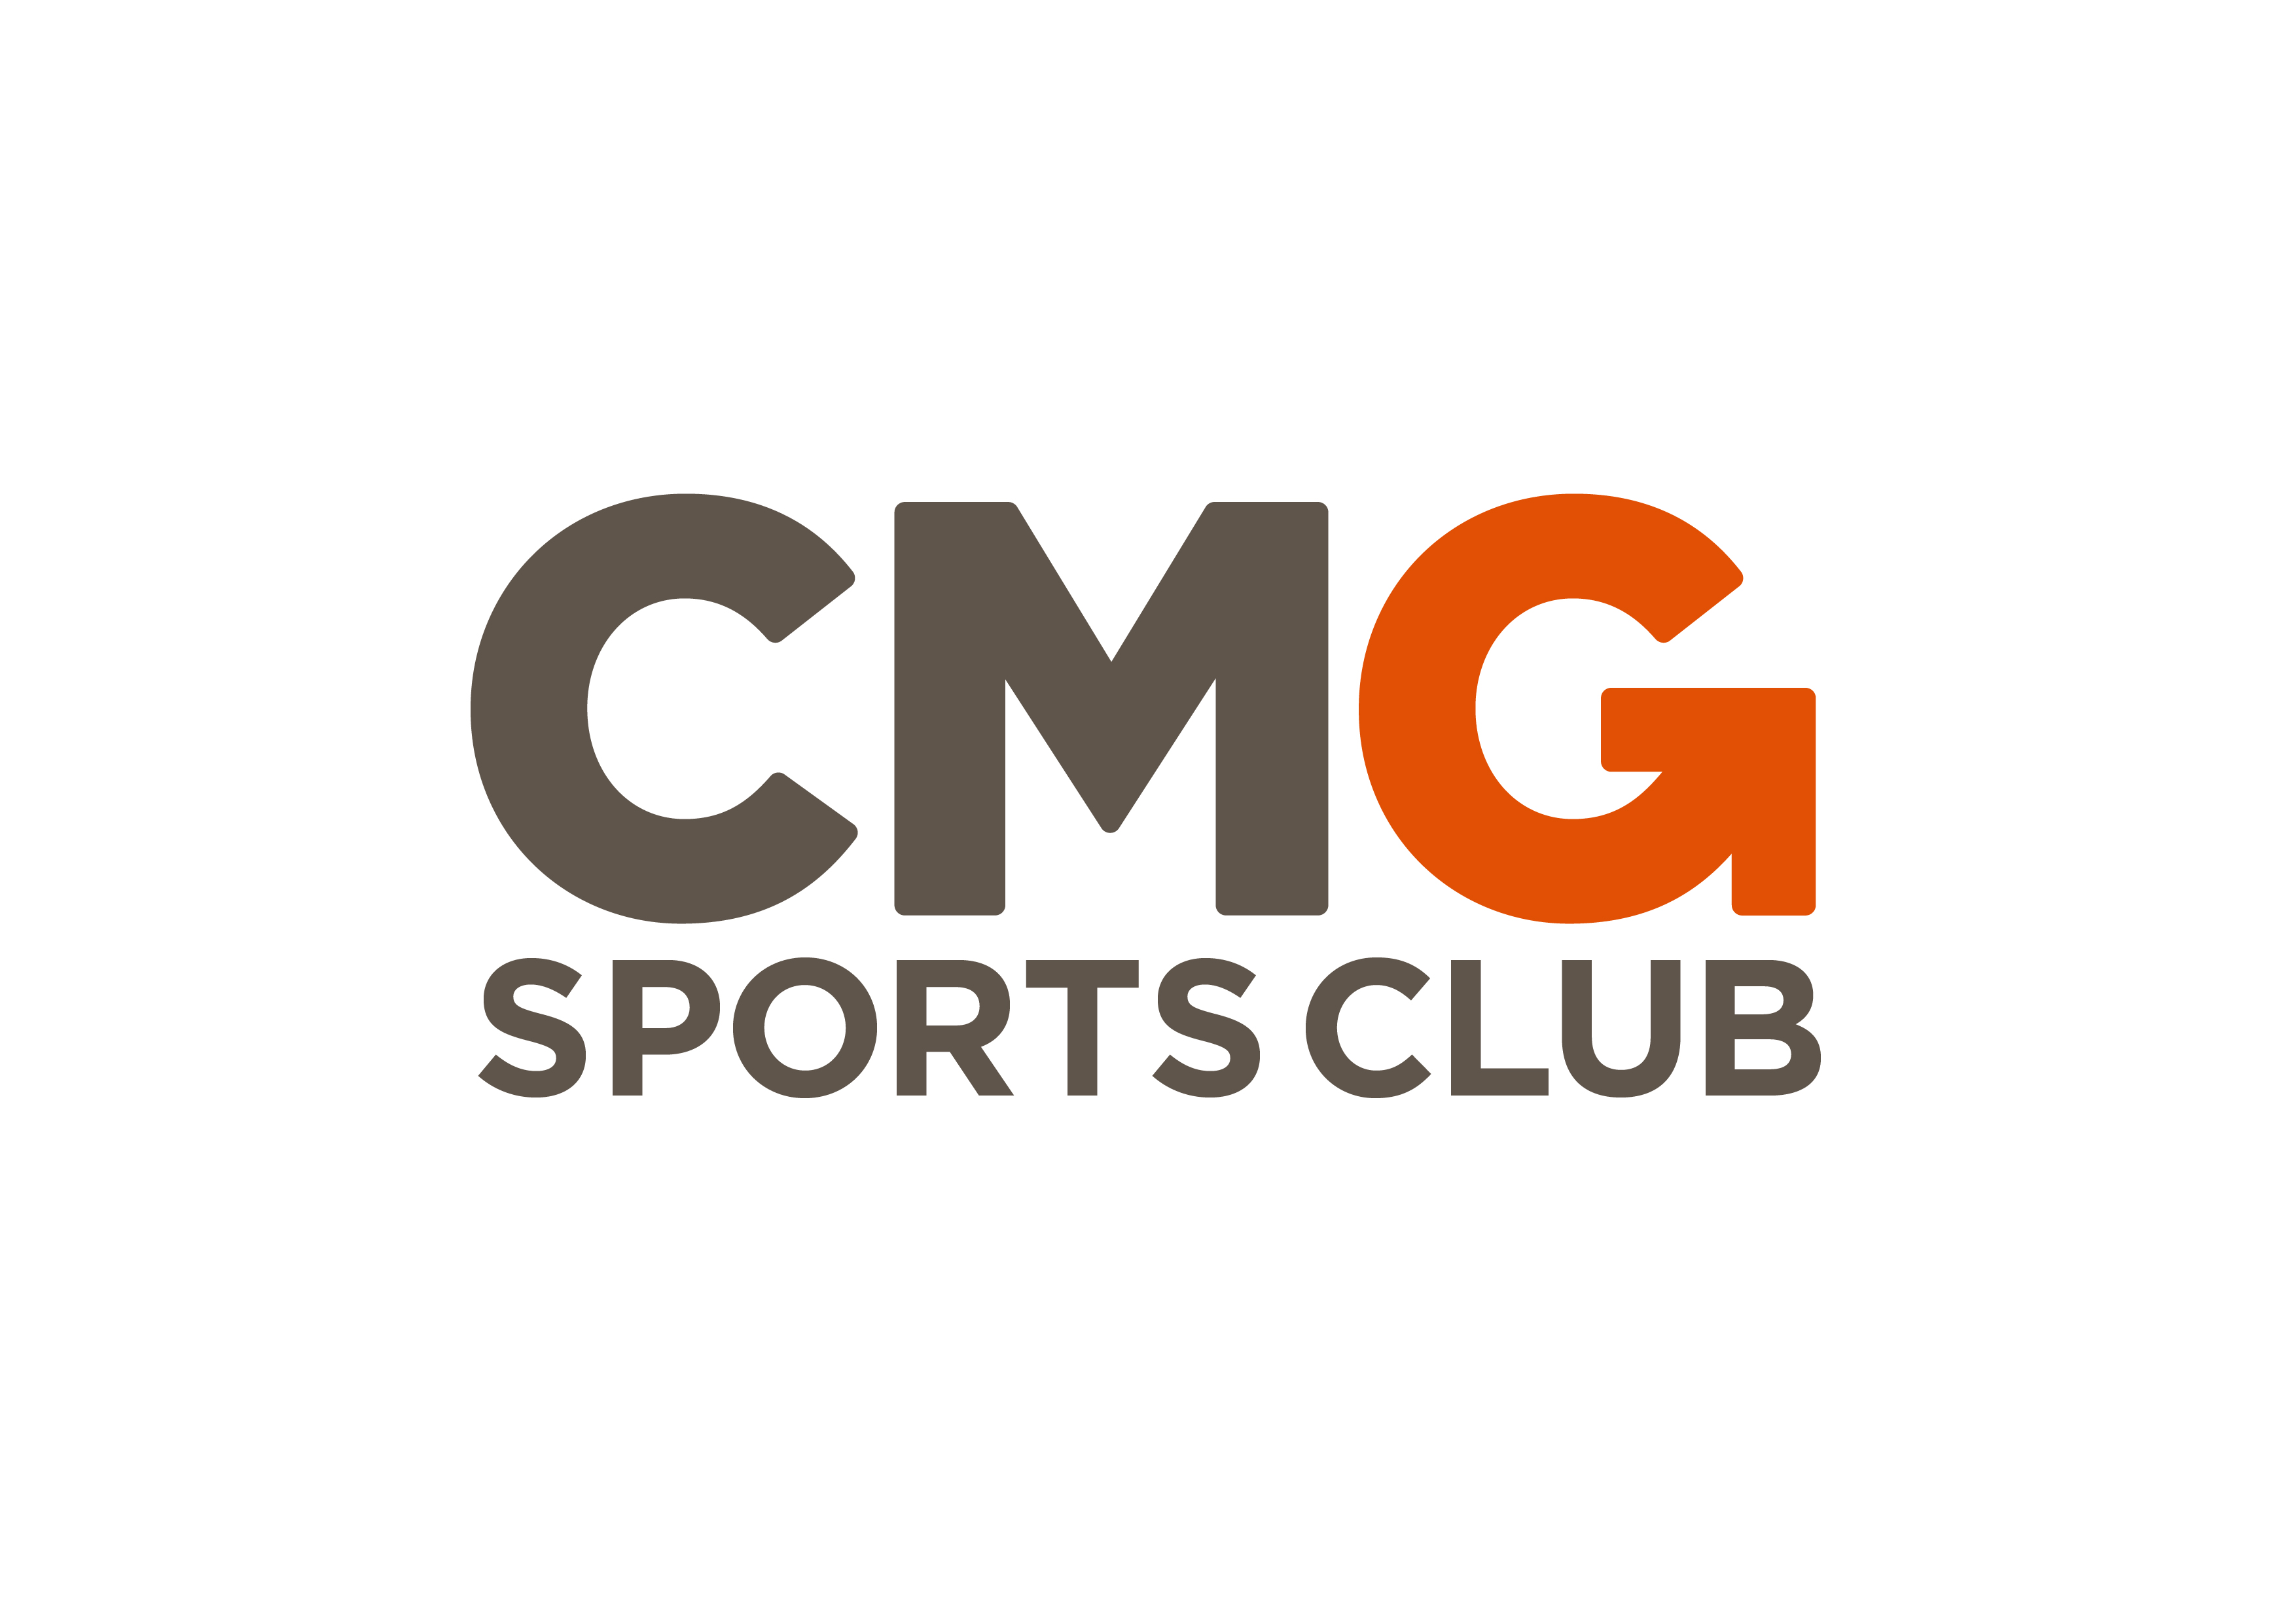 CMG Sports Club